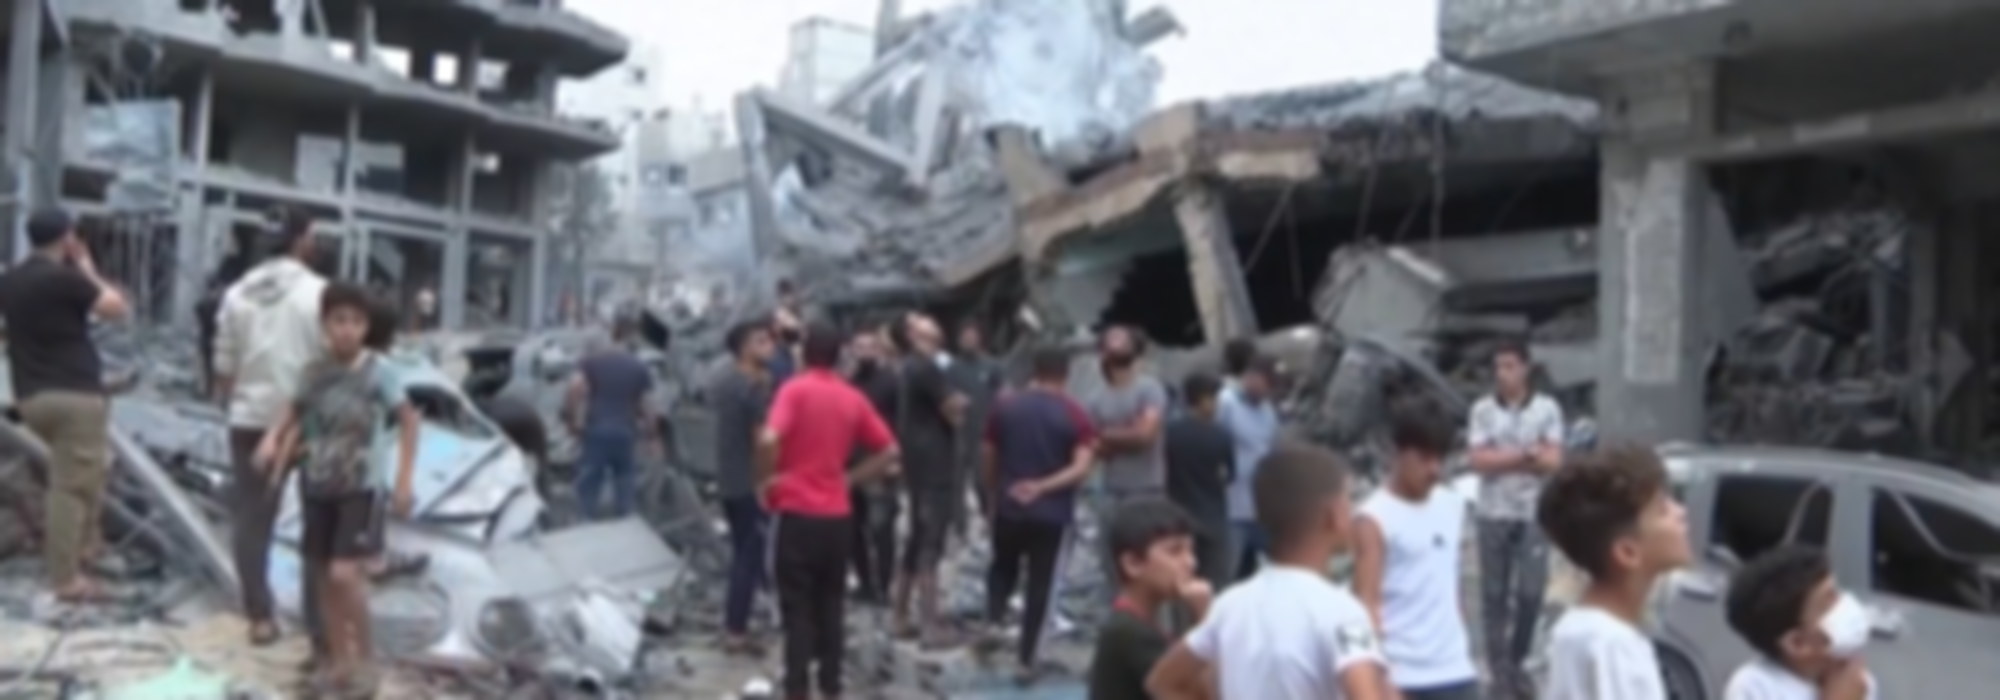 Mensen in Gaza staan in een verwoeste straat, omringd door verwoeste gebouwen.